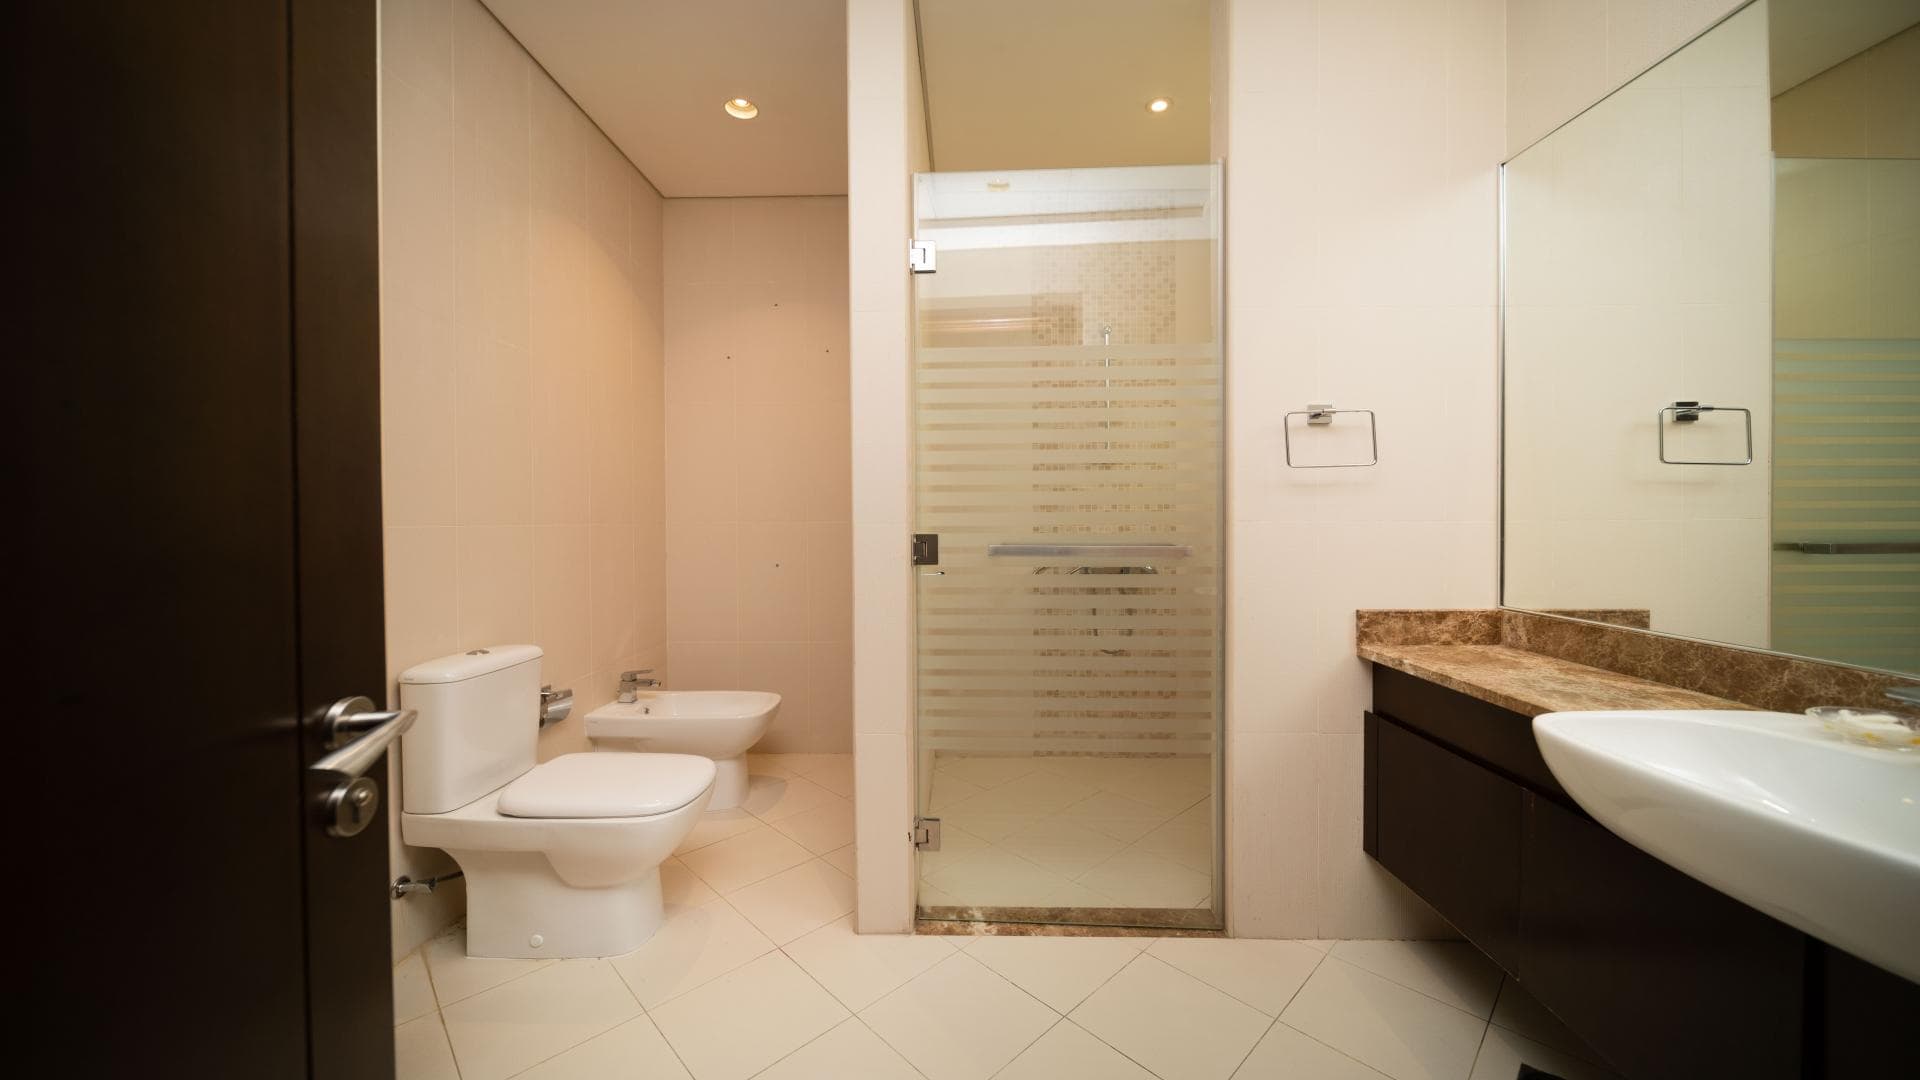 5 Bedroom Villa For Rent Meydan Gated Community Lp13922 20b8cdedb57fc400.jpg